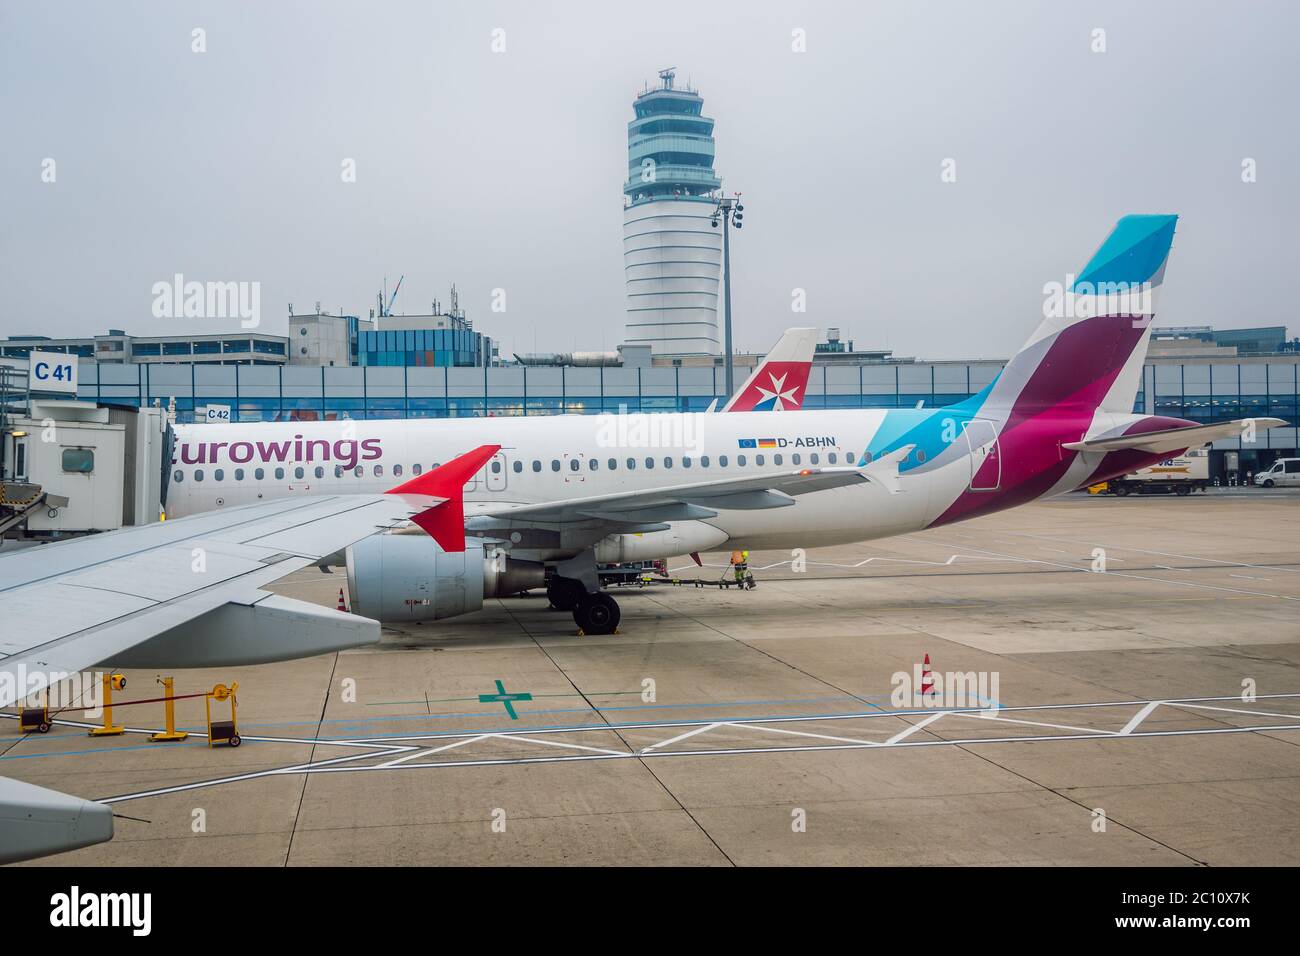 Eurowings Airbus A320-200 à la porte de l'aéroport international de Vienne. Eurowings est la compagnie aérienne low-cost du groupe Lufthansa. Banque D'Images